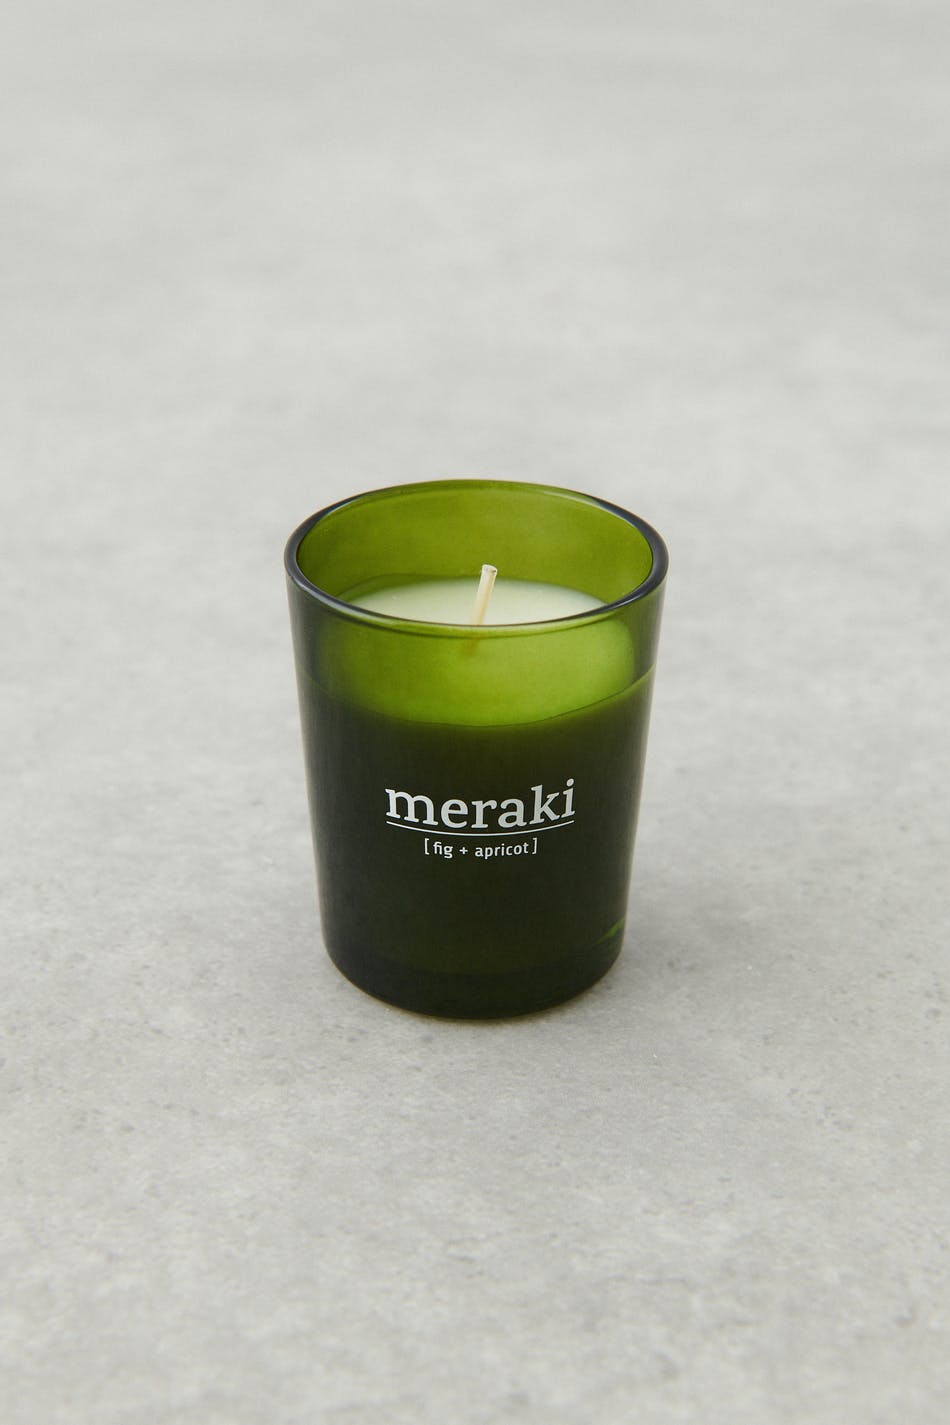 Meraki small scented candle